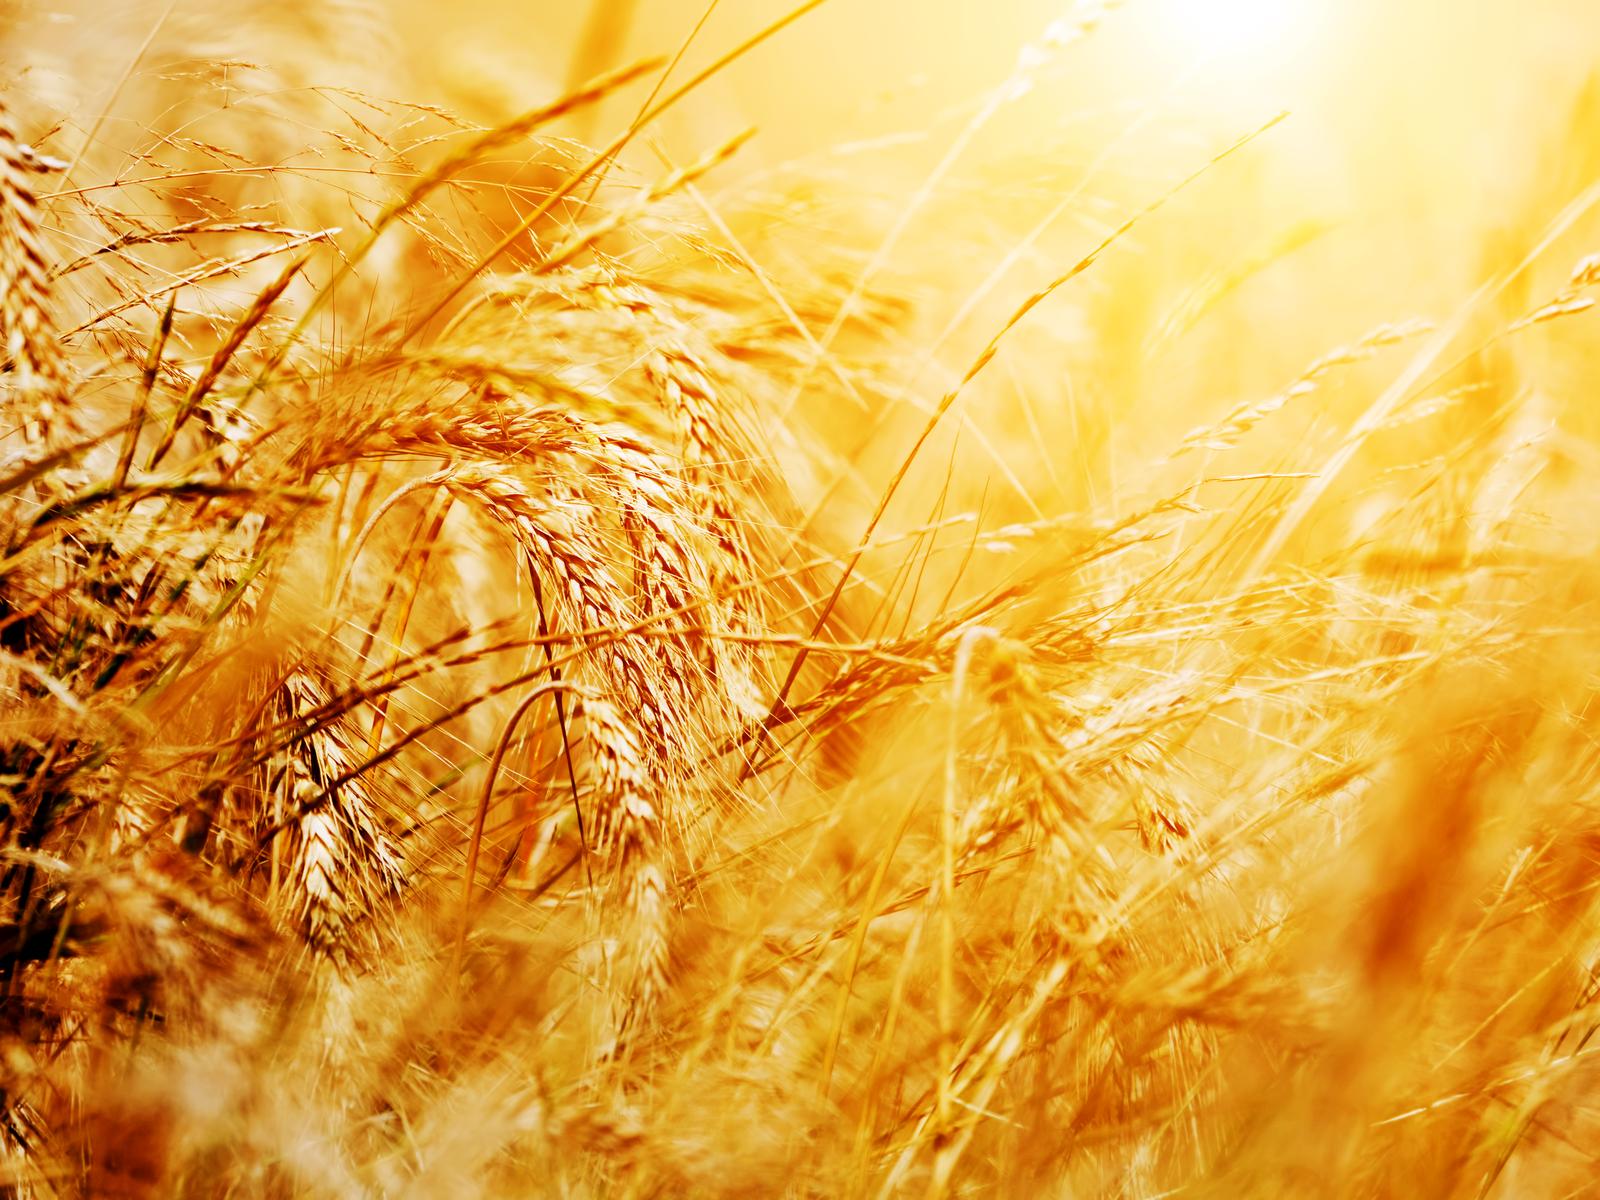 JAAK AADER FIE - Growing of cereals (except rice), leguminous crops and oil seeds in Estonia